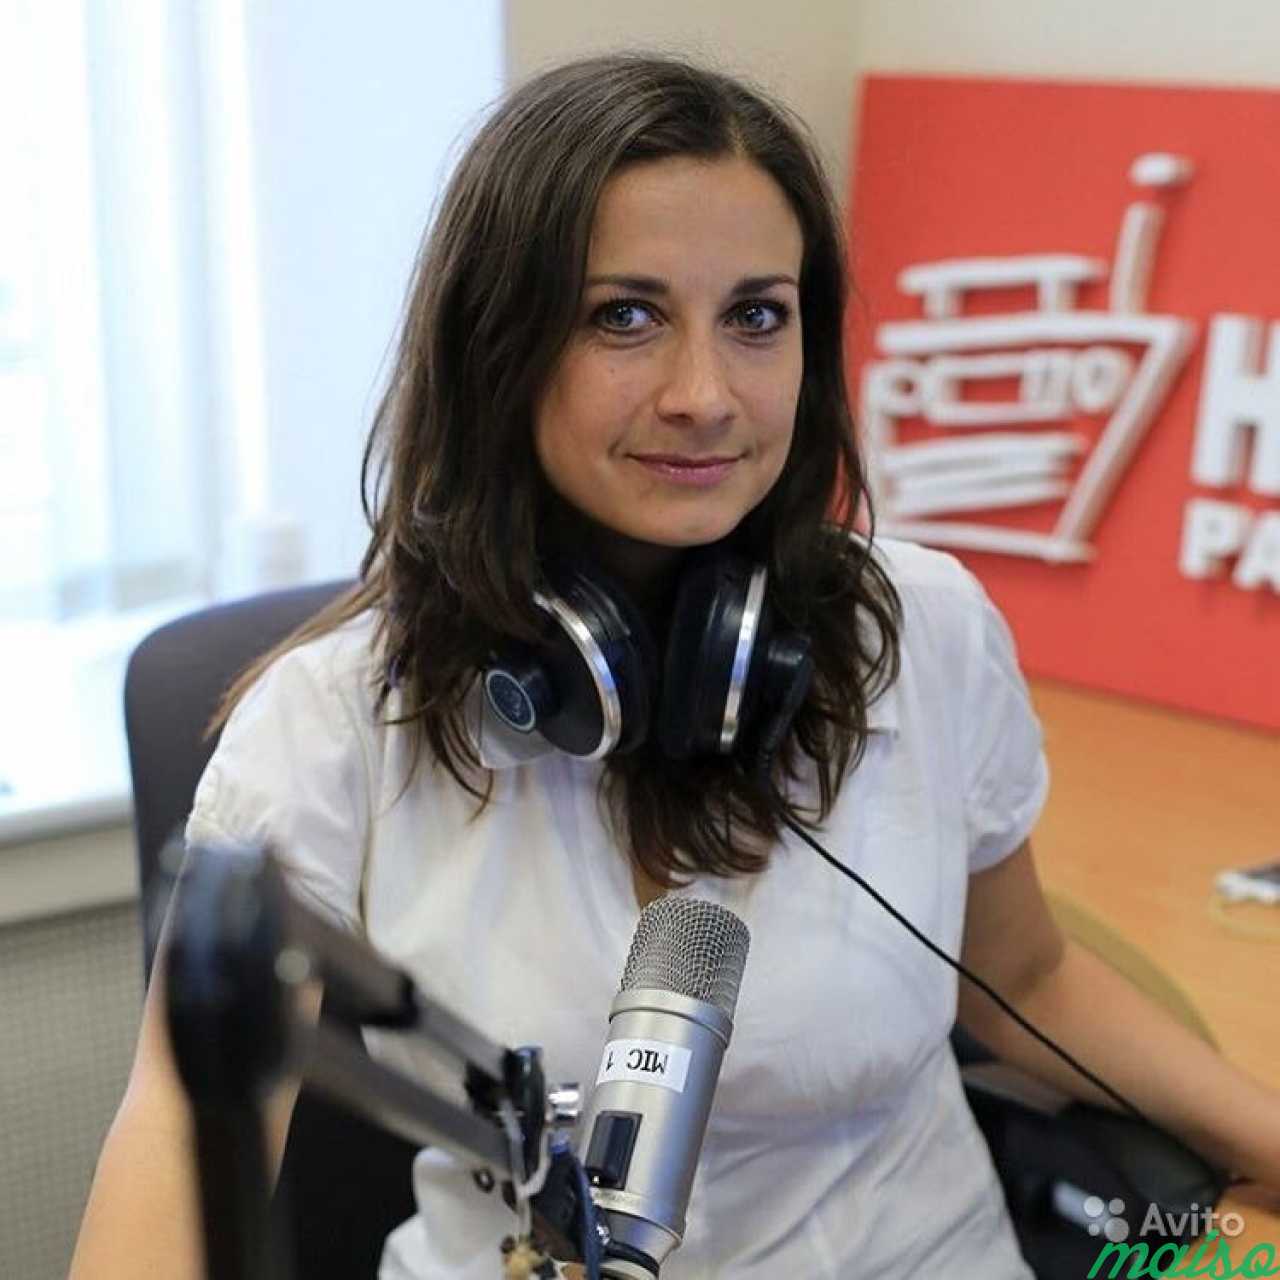 Маша Ковшова наше радио